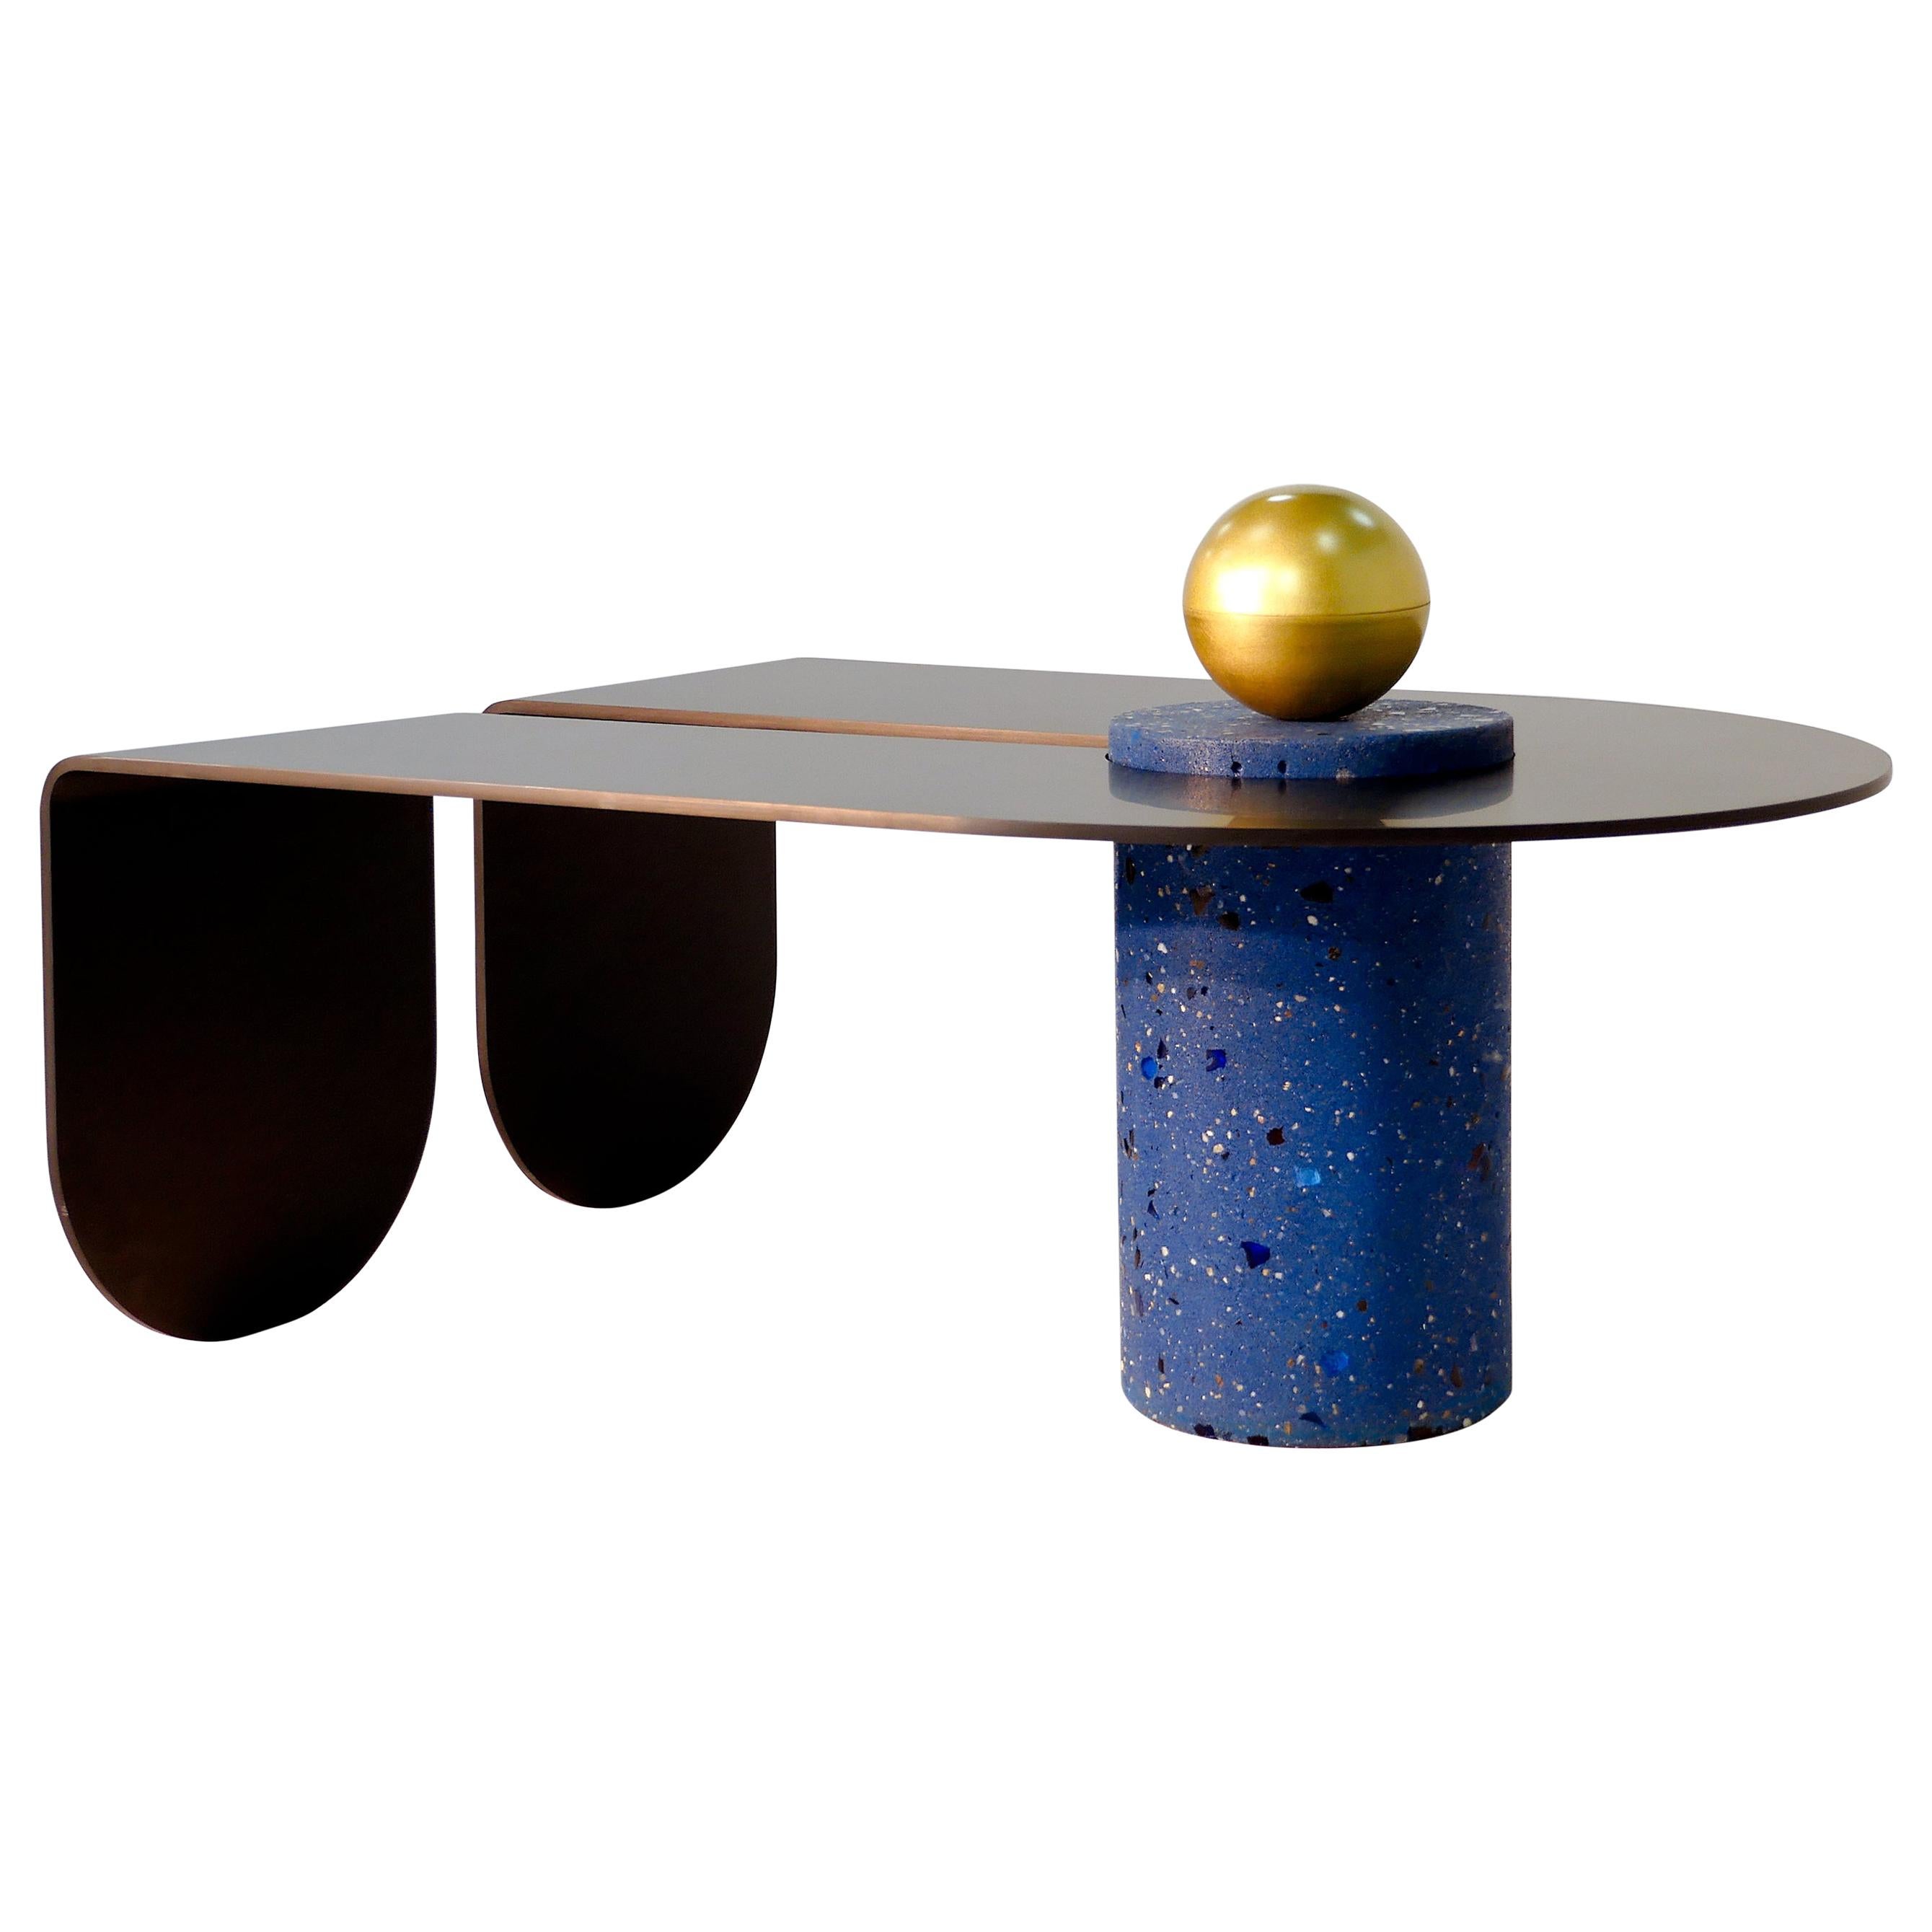 U&I Coffee Table with Brass Storage Sphere by Birnam Wood Studio